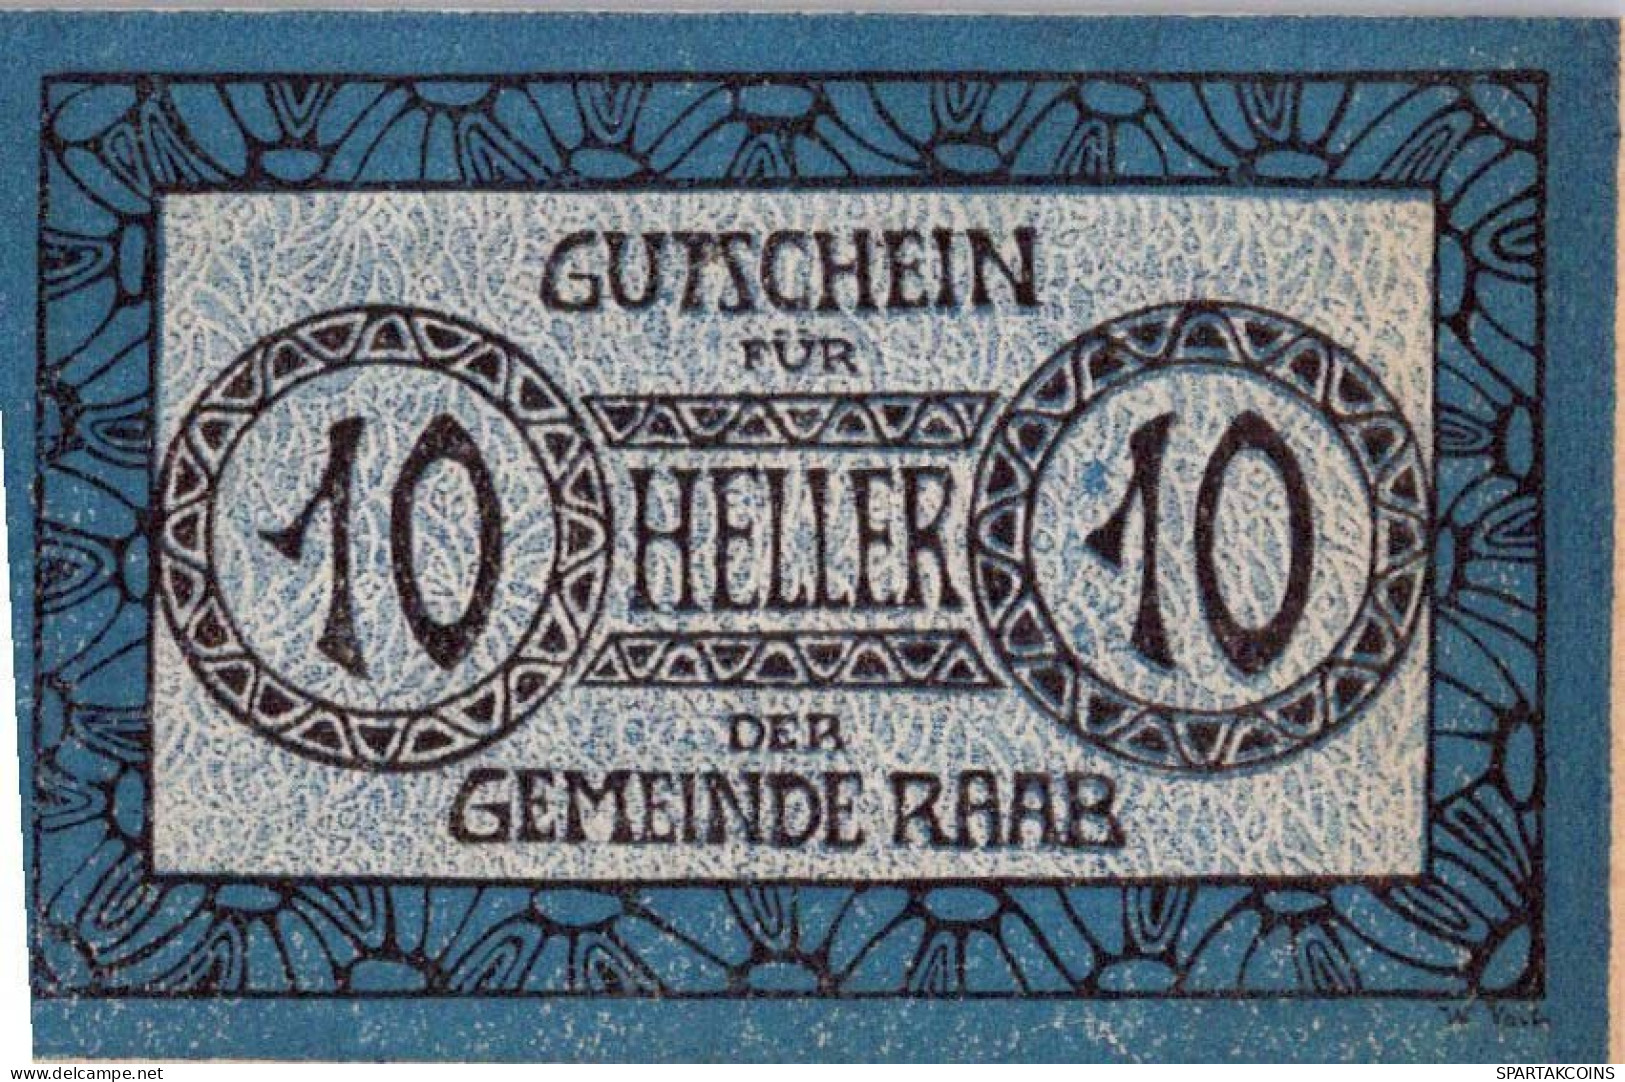 10 HELLER 1920 Stadt RAAB Oberösterreich Österreich UNC Österreich Notgeld Banknote #PH450 - Lokale Ausgaben